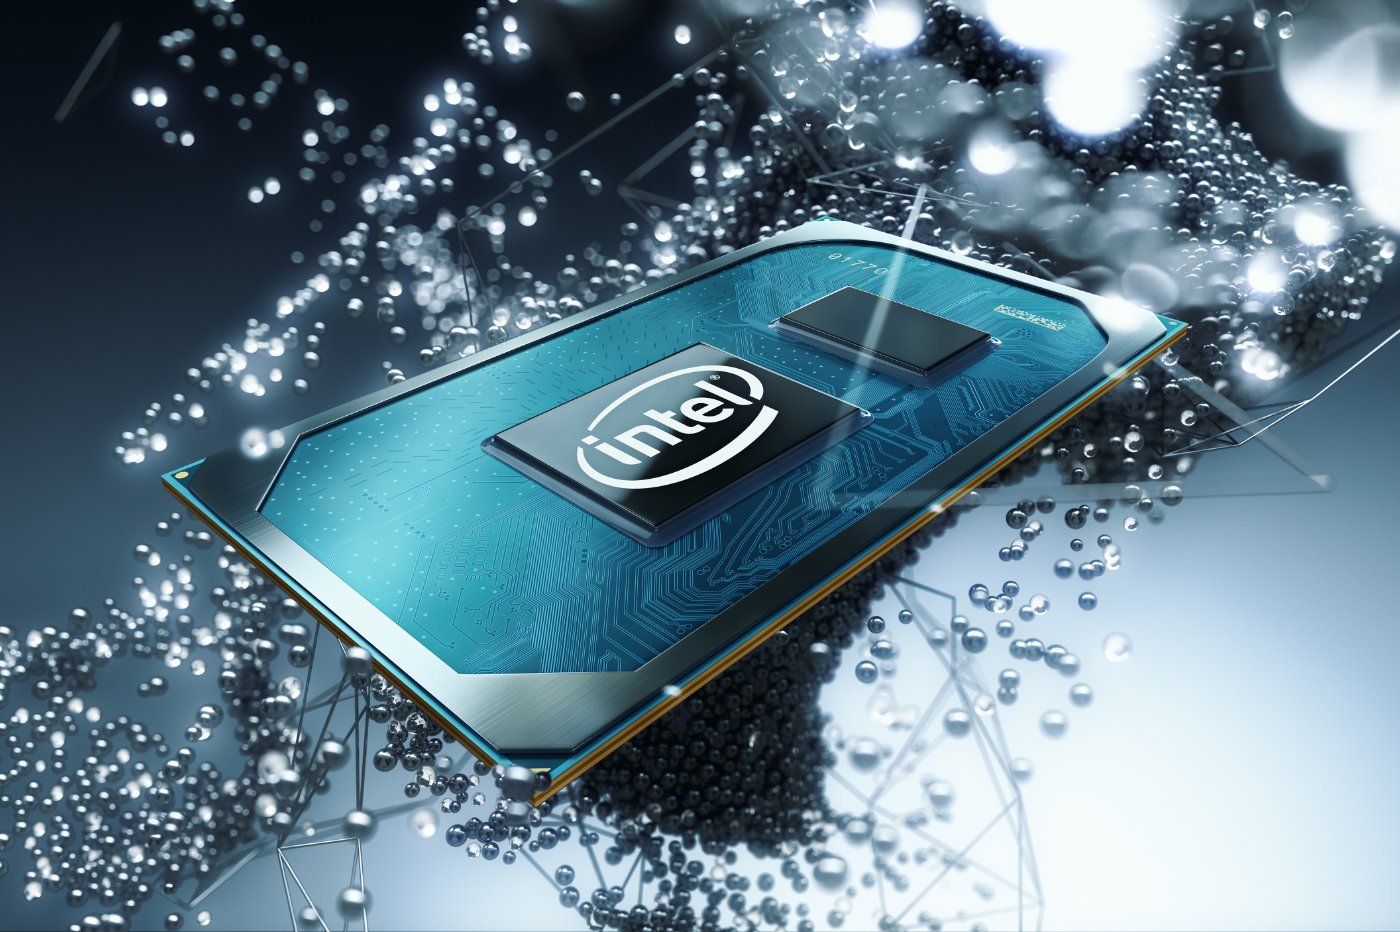 Tiger lake H : Intel dégaine le rival du M1 d’Apple